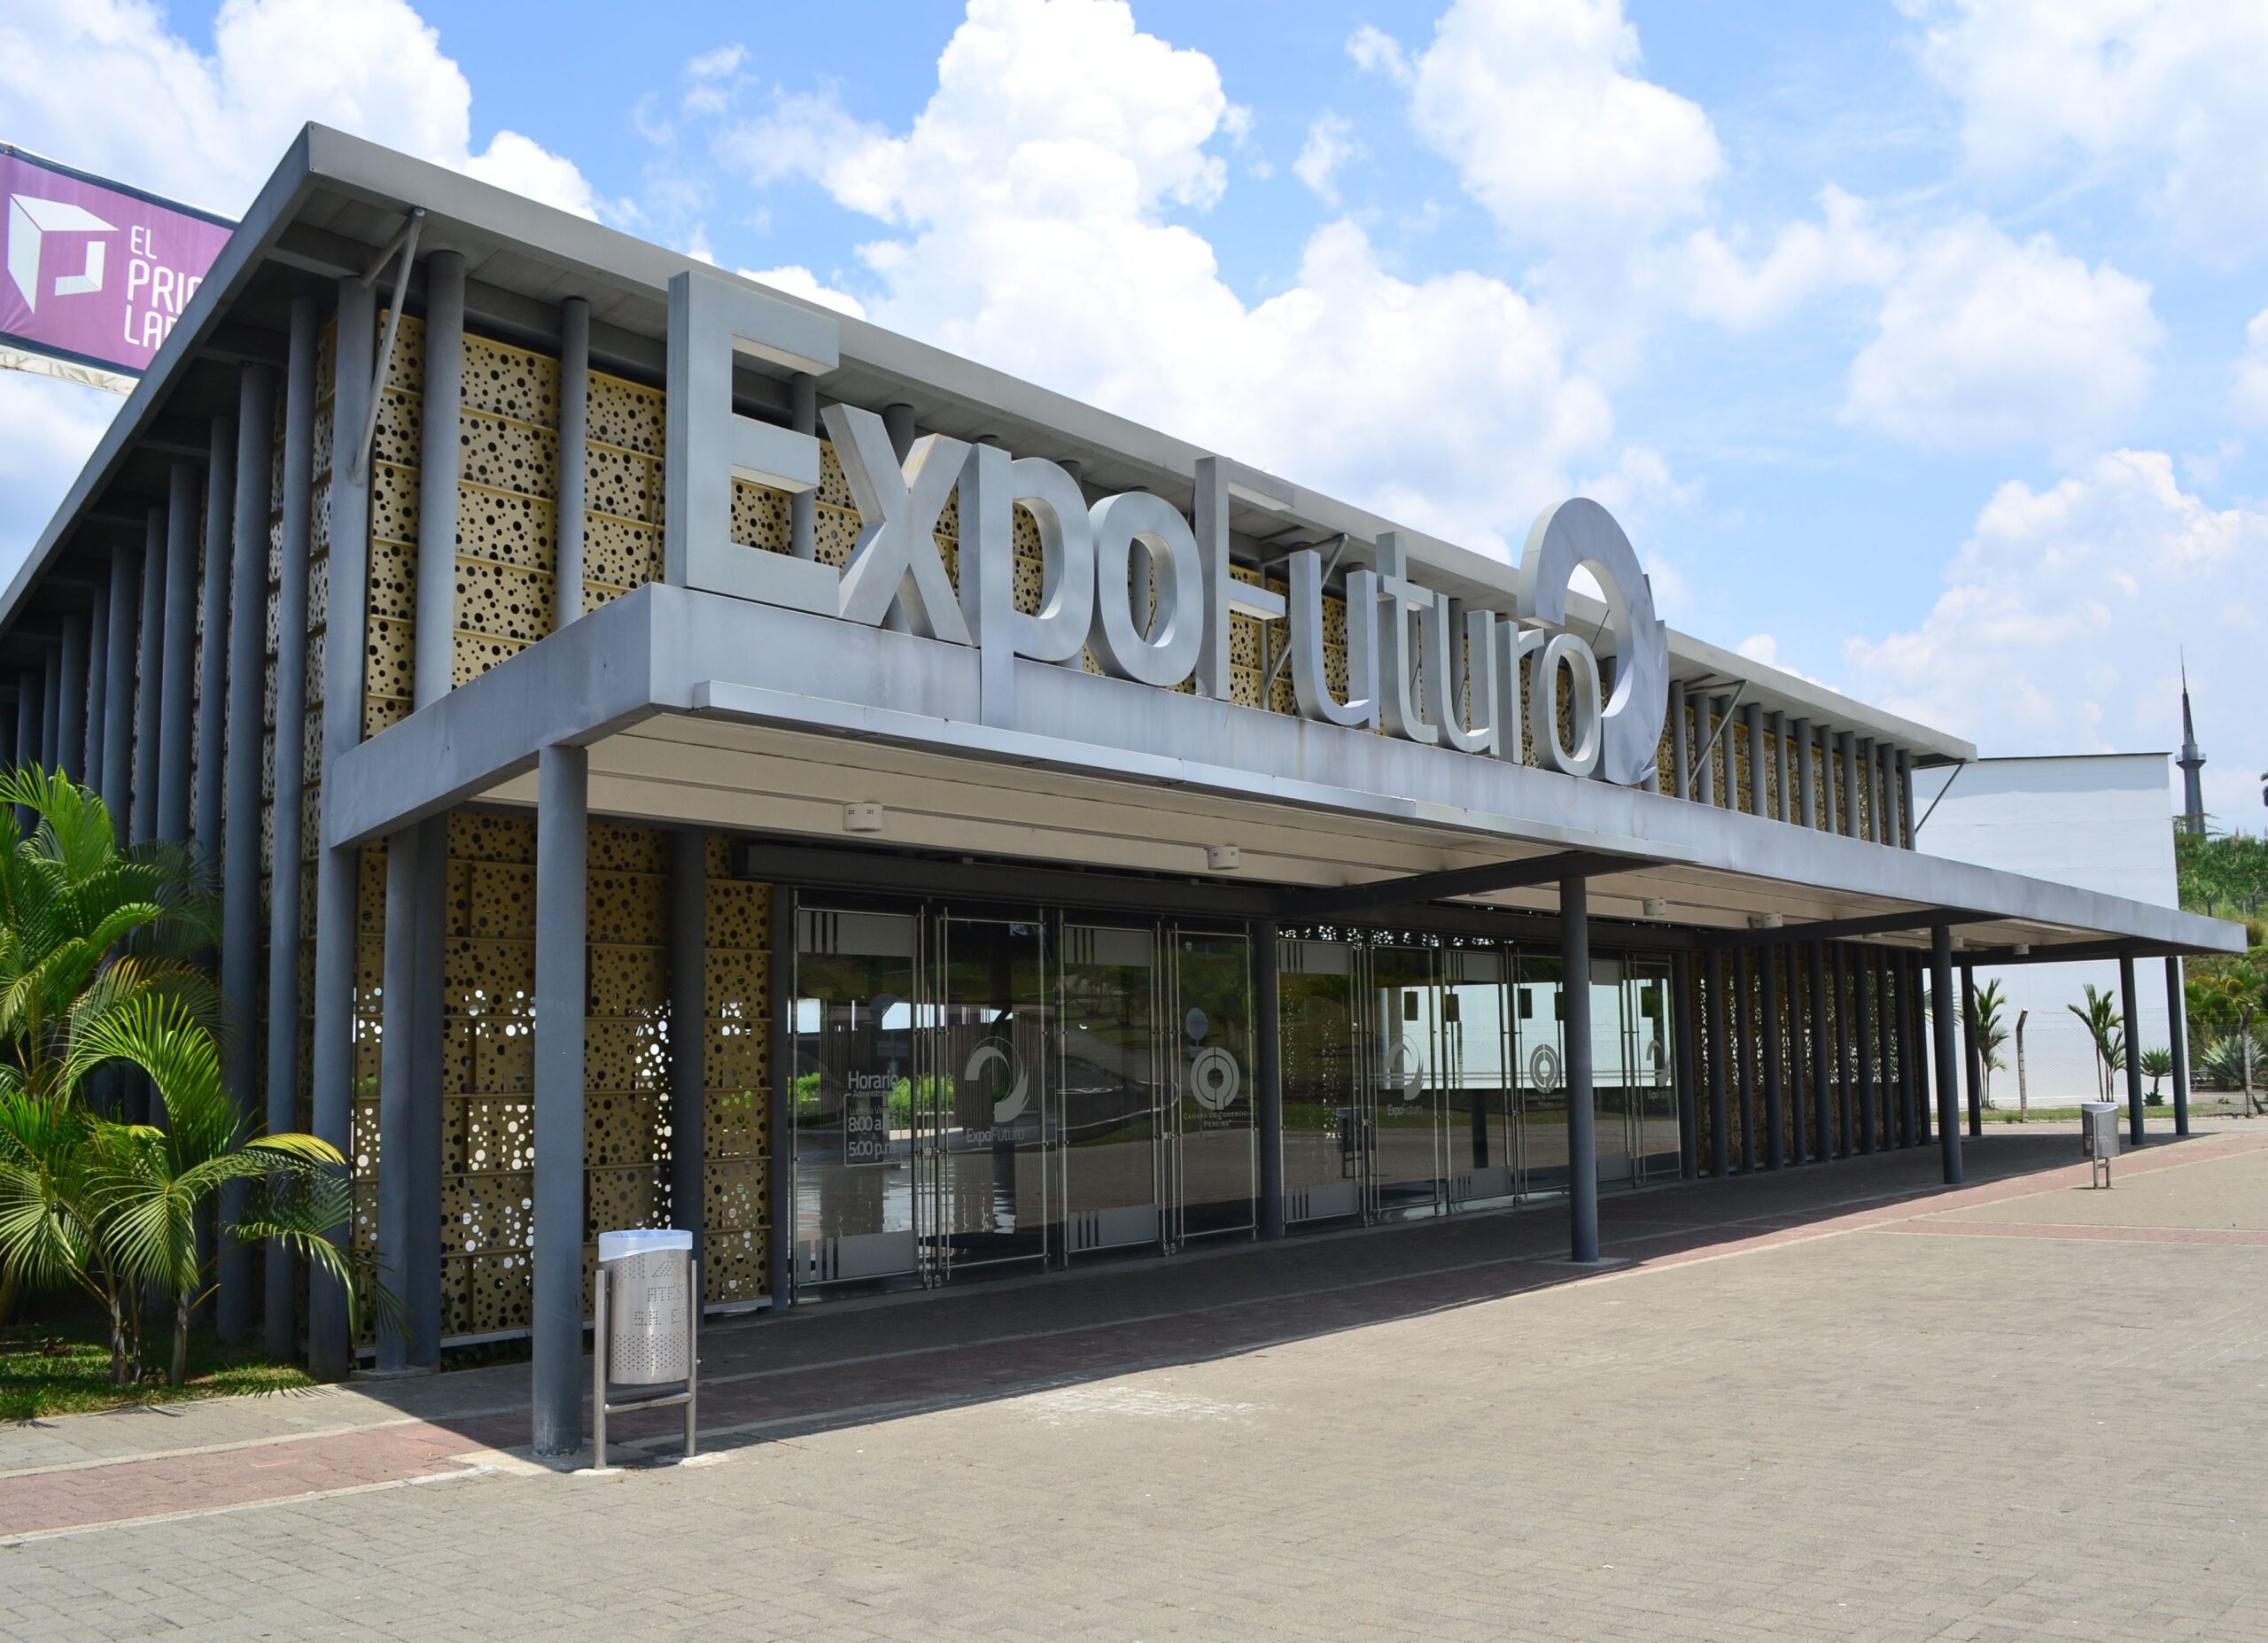 Centro de Convenciones – Expofuturo- Pereira enews imagenes imagen 3776 scaled